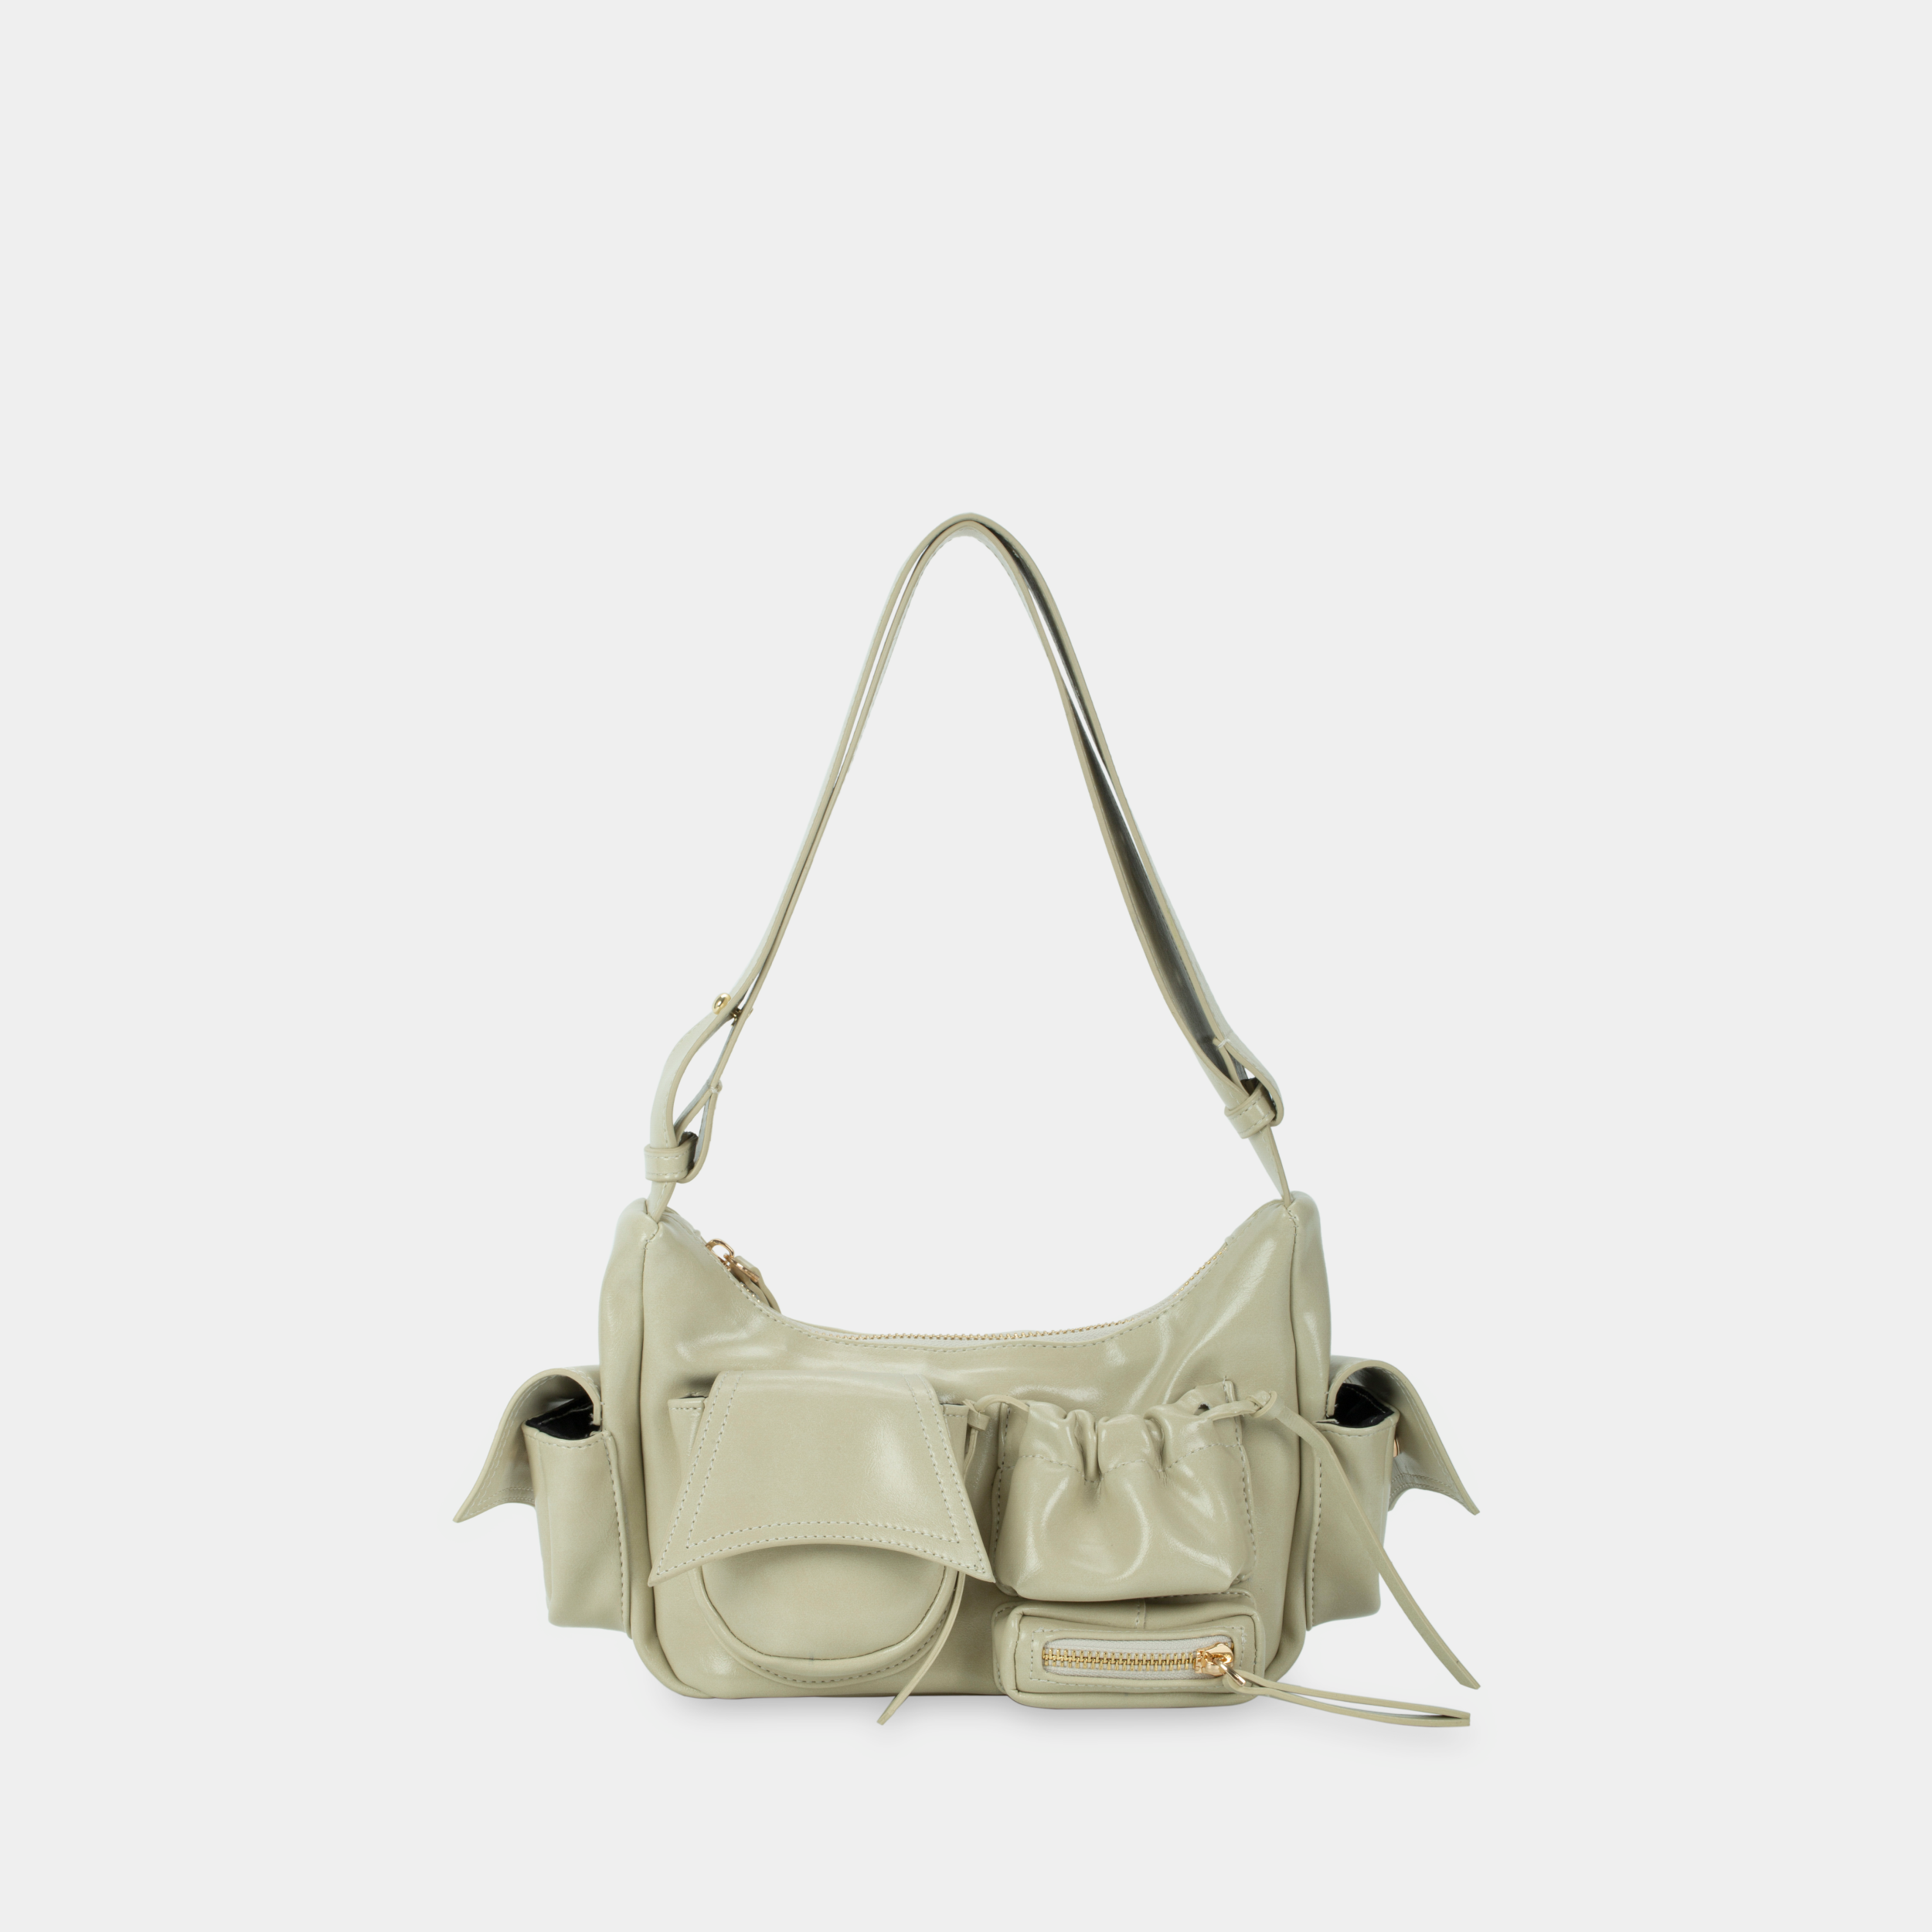 Handbag C5-Pocket size S in white